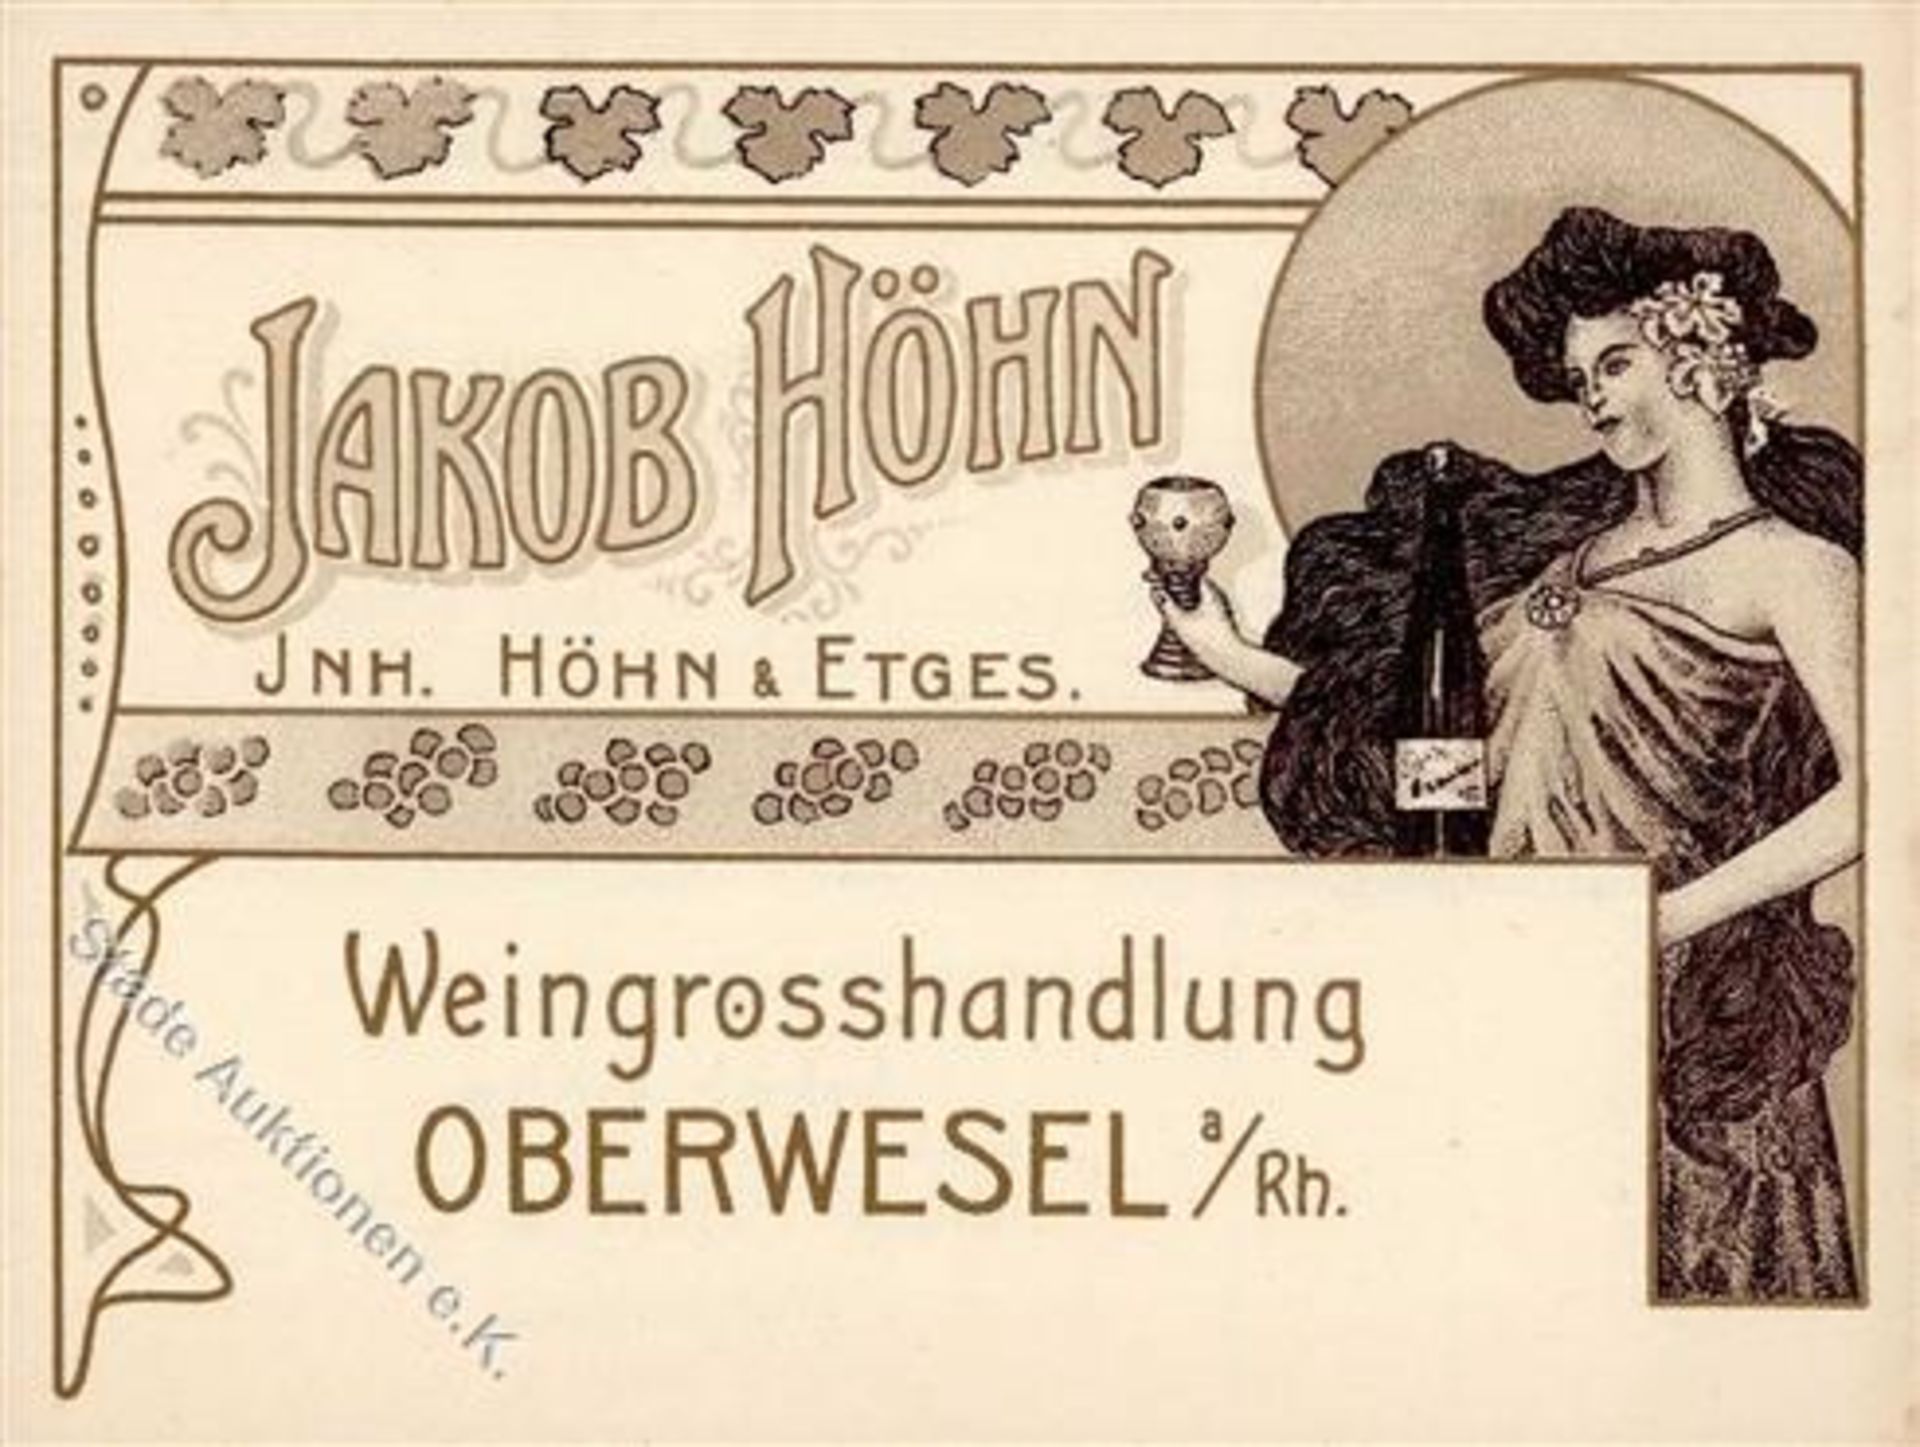 Oberwesel (6532) Weingrosshandlung Höhn Werbe-Karte Klapp AK IDieses Los wird in einer online-